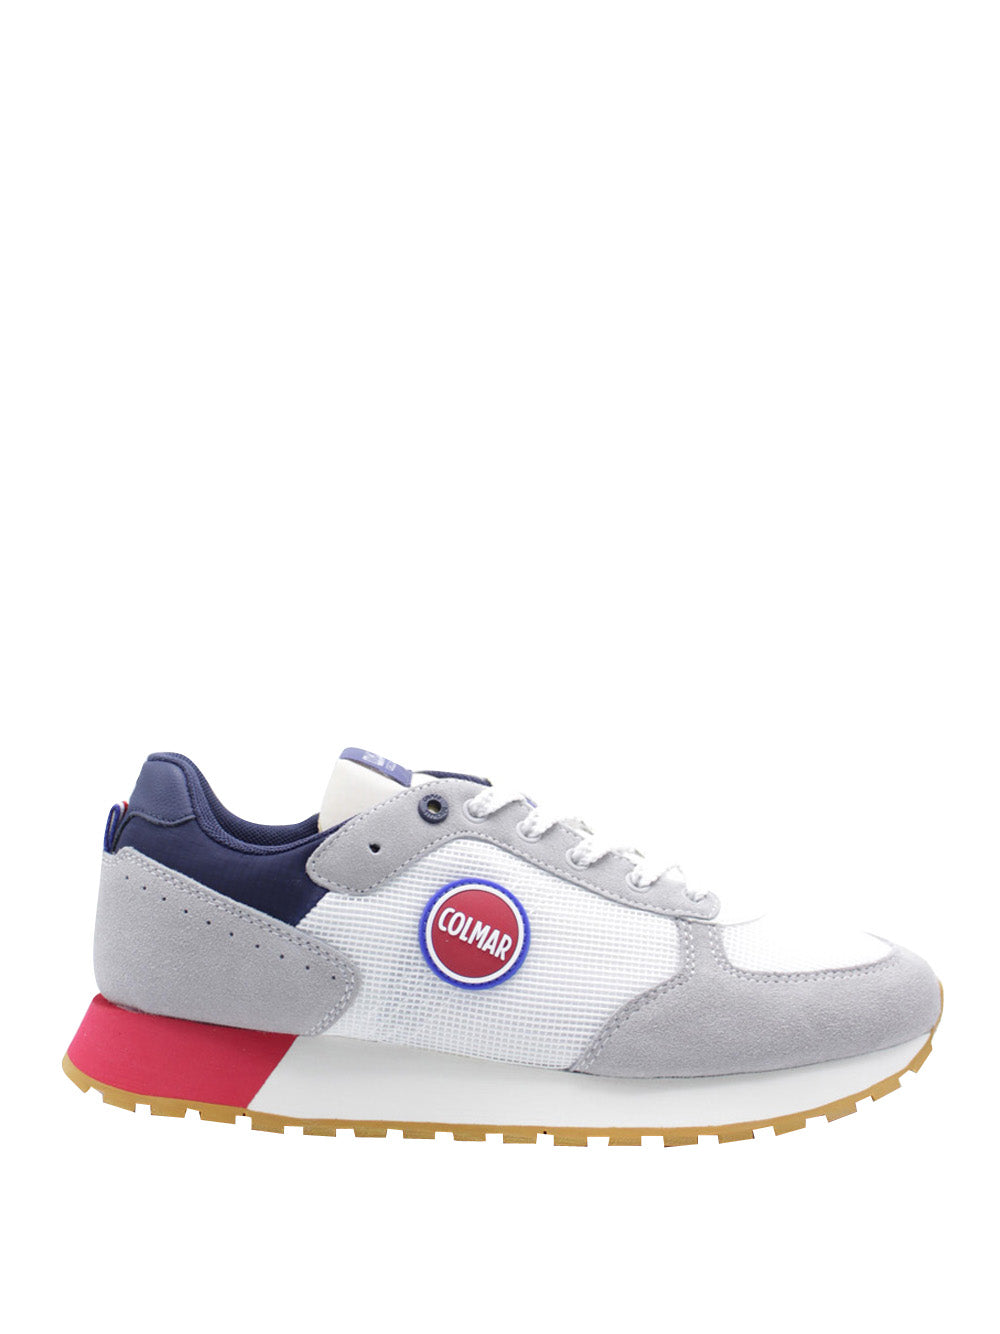 COLMAR Sneakers Uomo - Bianco modello TRAVISORIGINALS